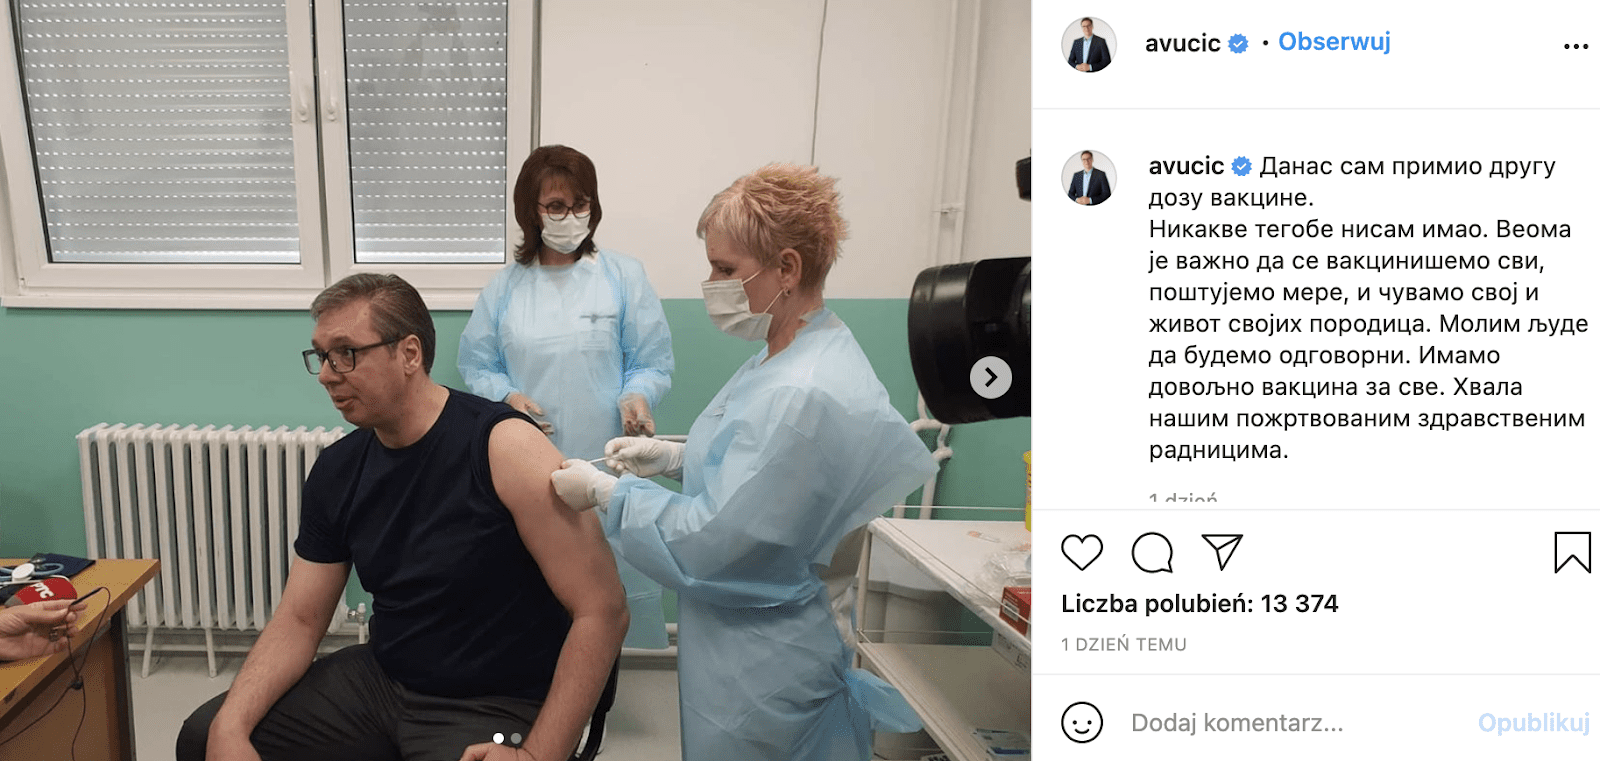 Post na Instagramie prezydenta Serbii Aleksandra Vucica ze zdjęciem w trakcie szczepienia. Prezydent ubrany w czarną koszulkę siedzi w gabinecie lekarskim. Pracownik medyczny wbija igłę strzykawki w lewe ramię mężczyzny. 